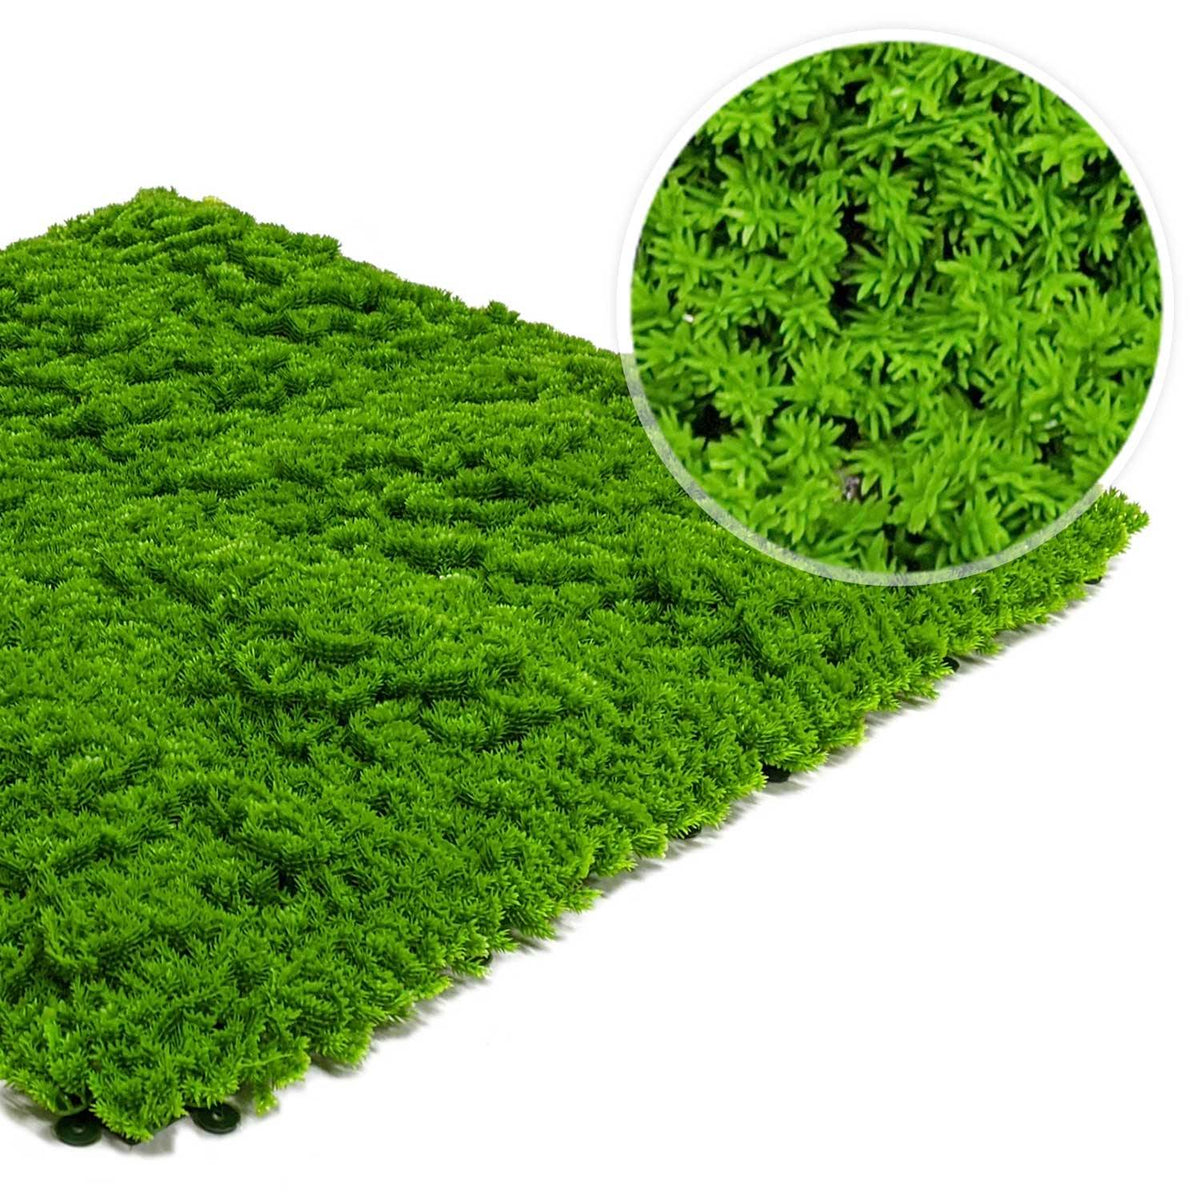  BUTIFULSIC Artificial Fake Moss Artificial Moss Mat